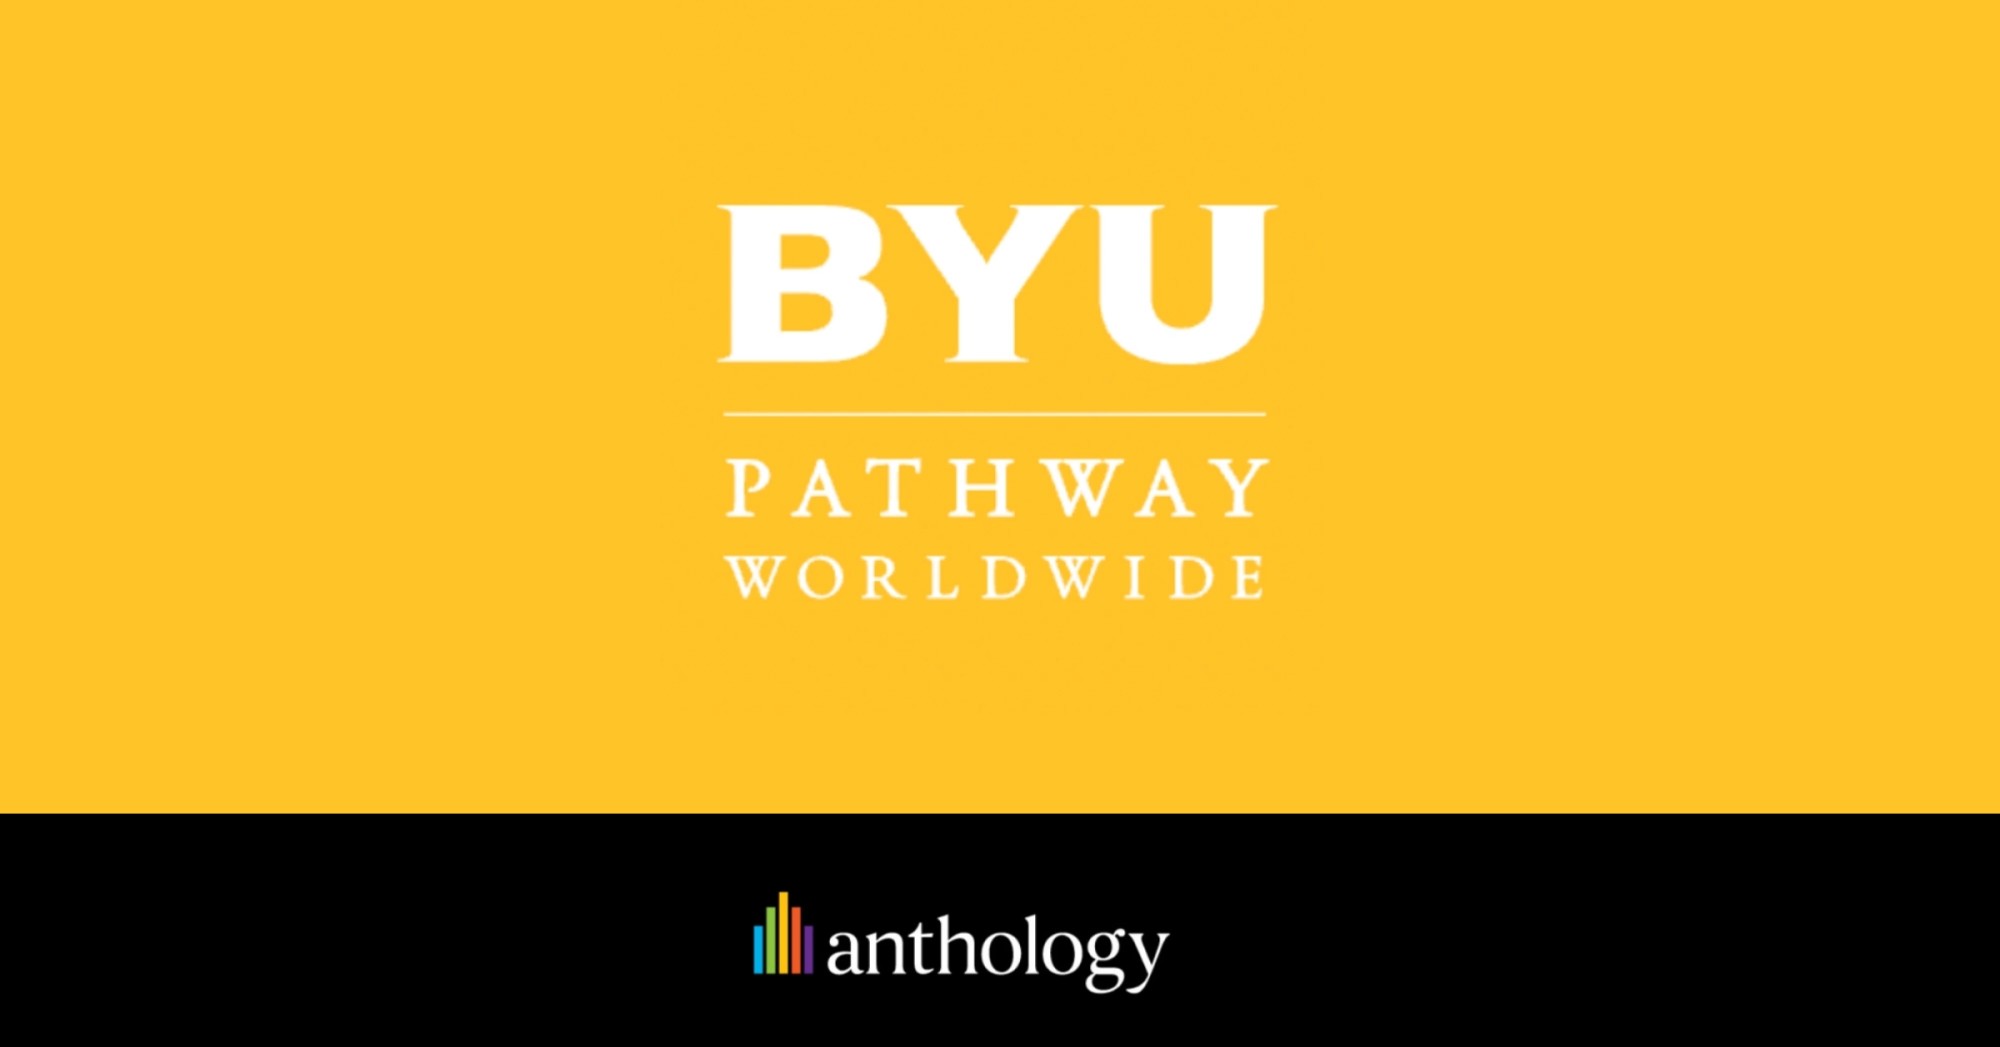 BYU Pathway Worldwide logo locked up with the Anthology logo